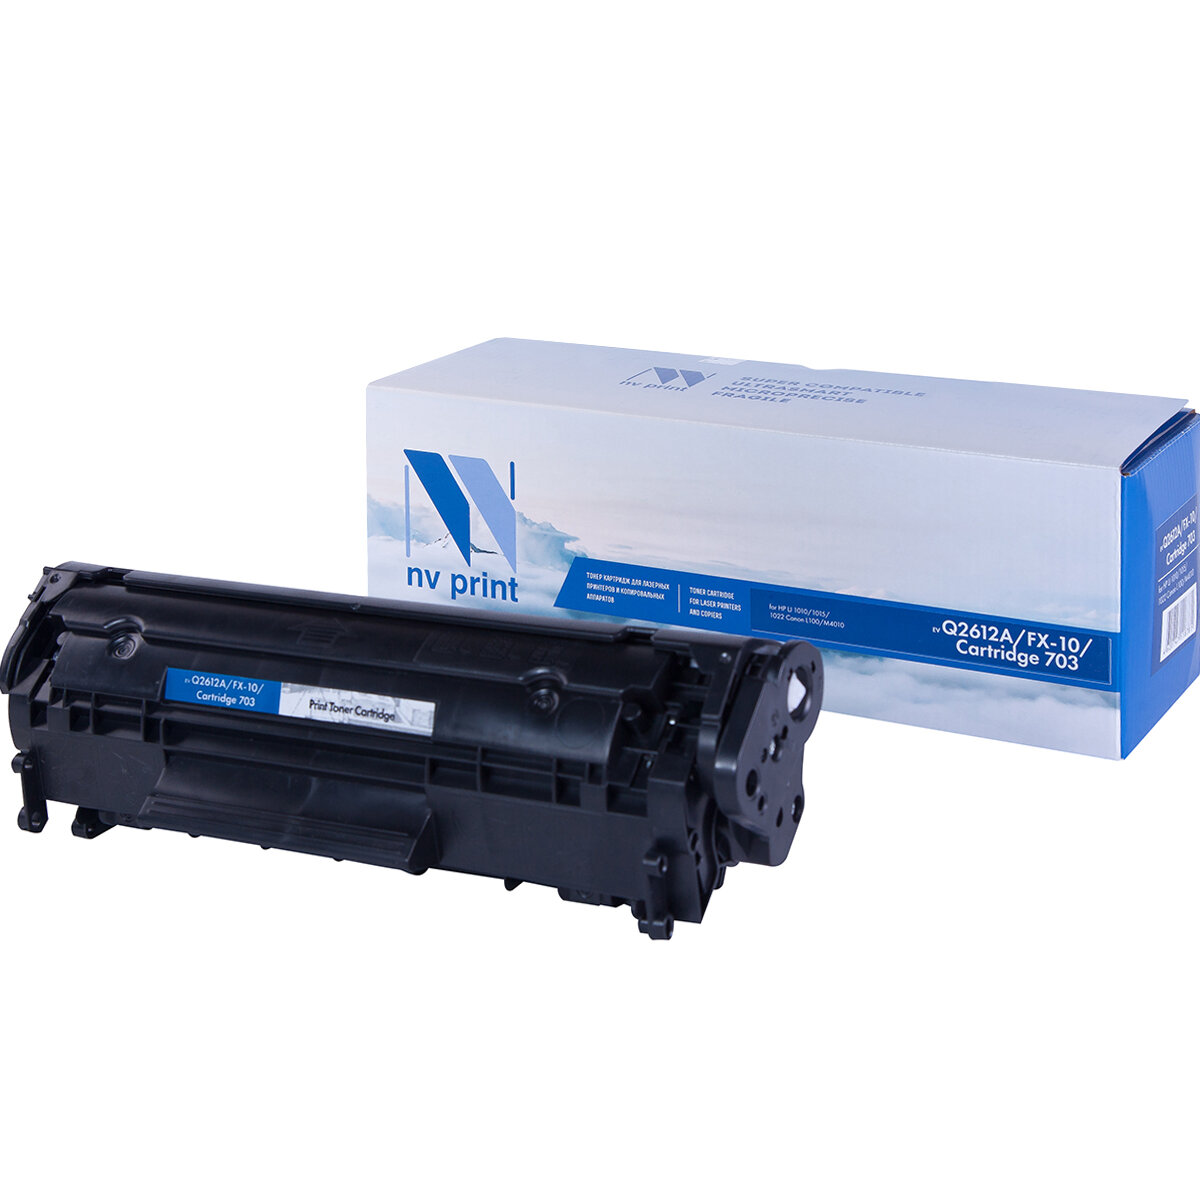 Совместимый картридж NV Print NV-Q2612A/ FX-10/703 (NV-Q2612A-FX10-703) для HP LaserJet M1005, 1010, 1012, 1015, 1020, 1022, M1319f